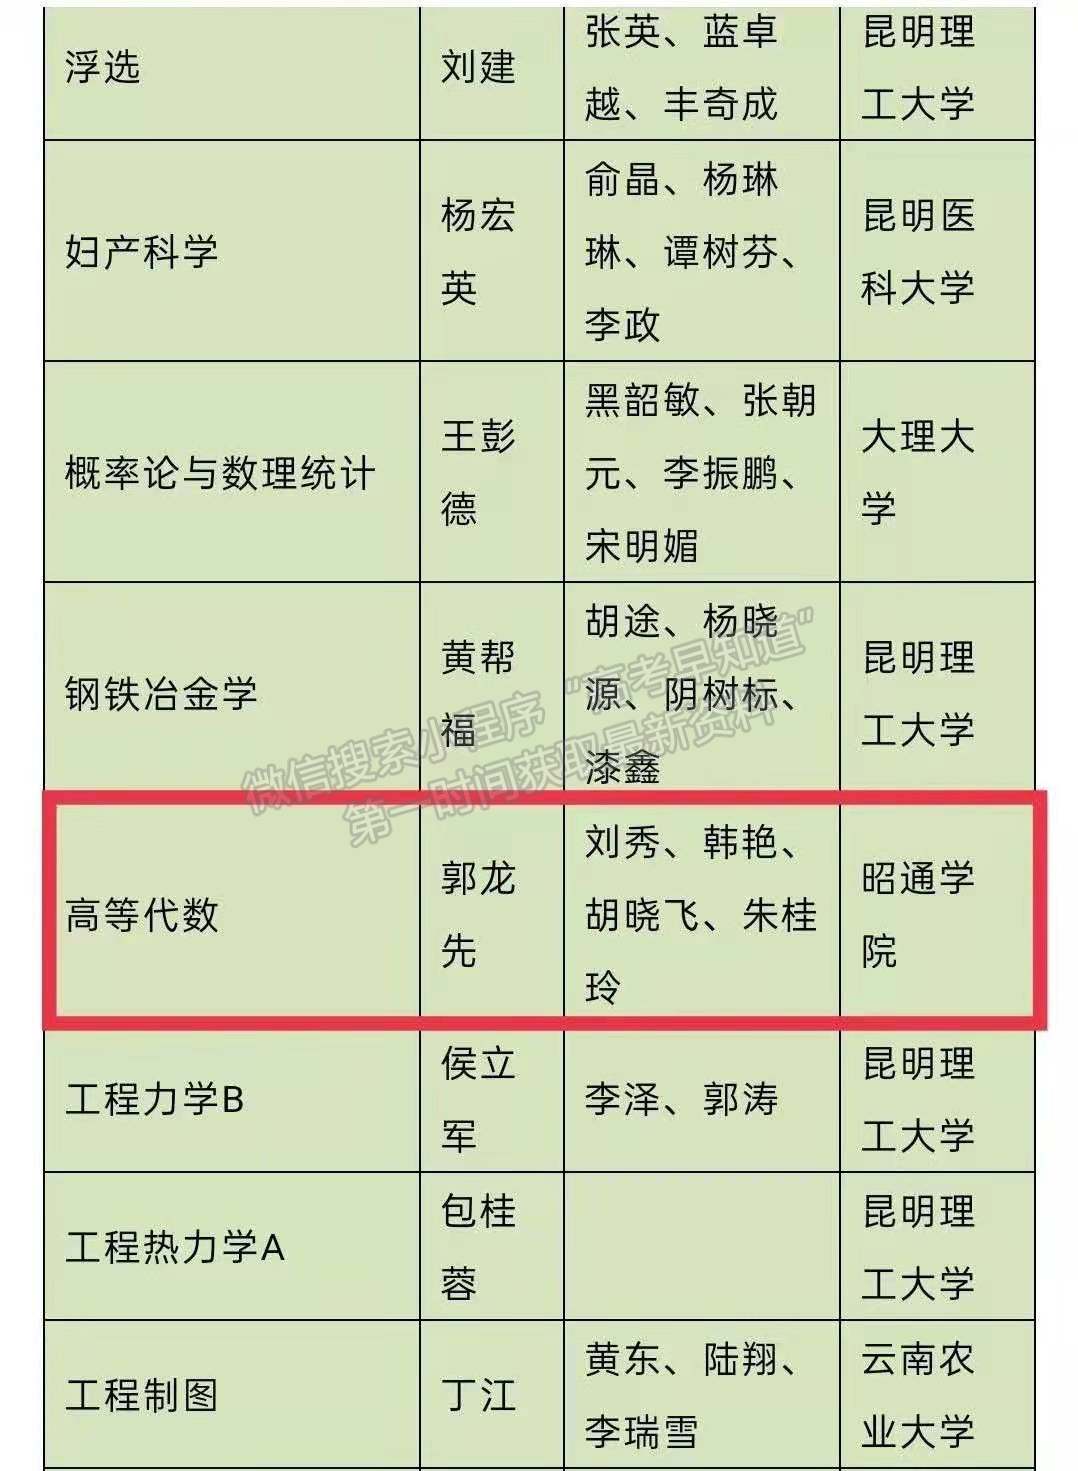 喜报||昭通学院《高等代数》课程被认定为云南省首批省级一流课程